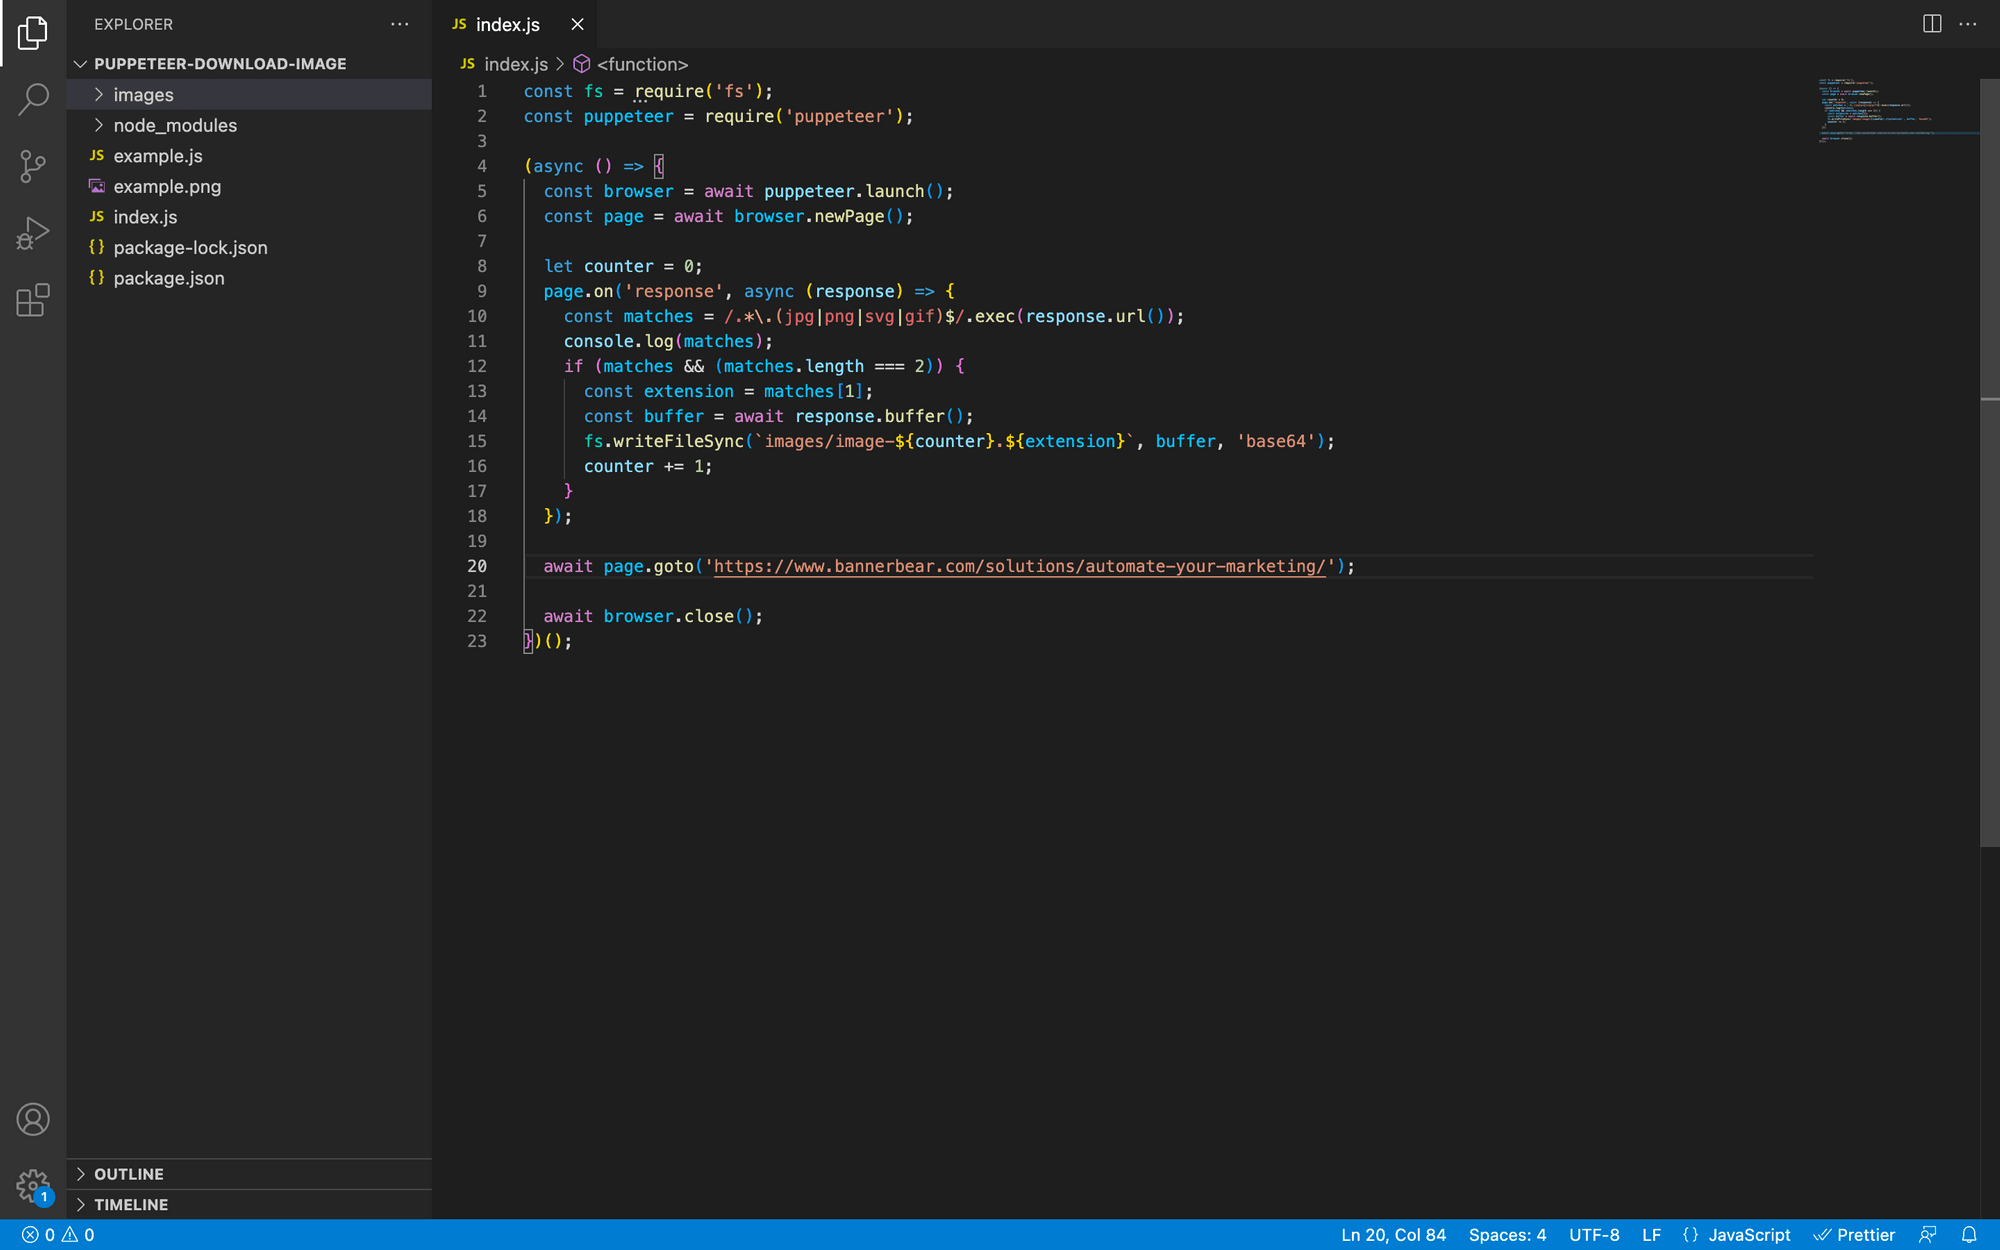 screenshot of code in index.js